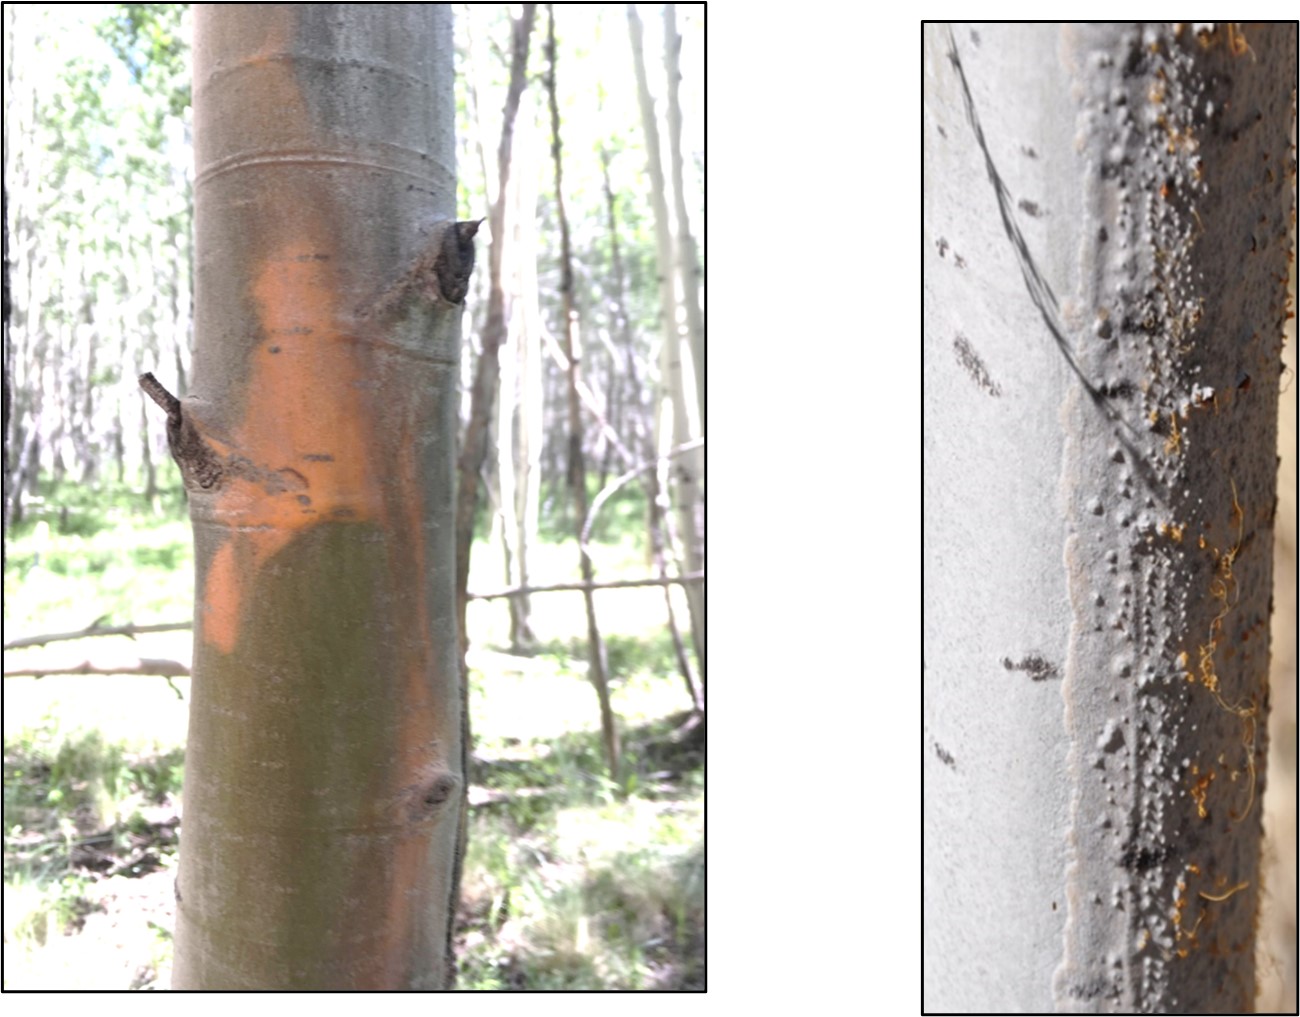 Cytospora spore tendrils exuding from bark of a dead tree.